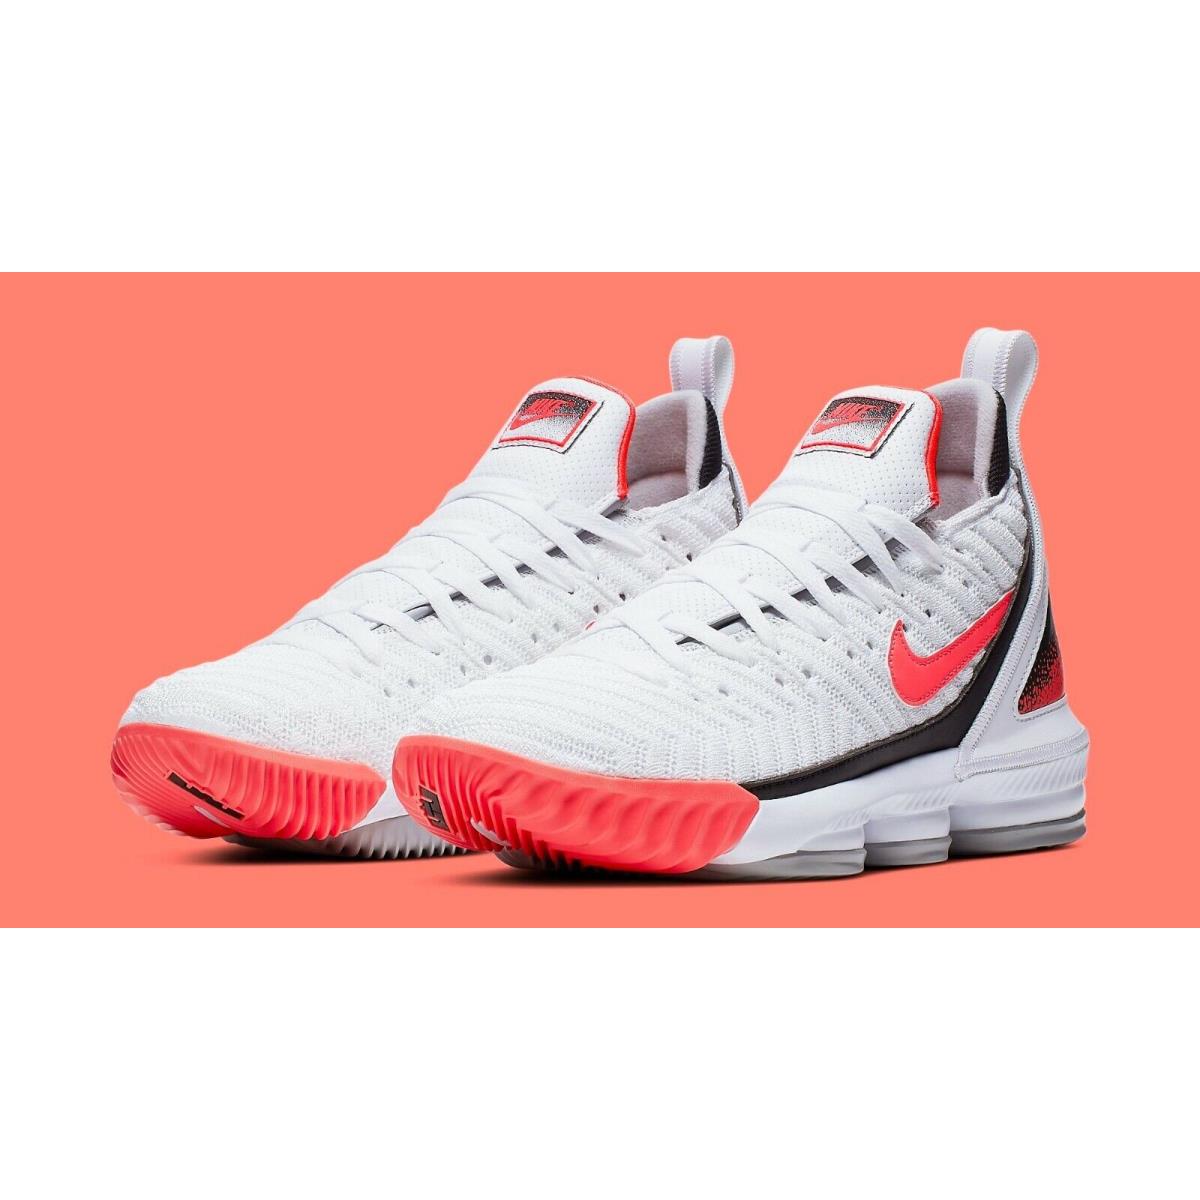 Nike Lebron Xvi 16 Hot Lava Size 16. Tech Challenge CI1521-100 White Black Pink